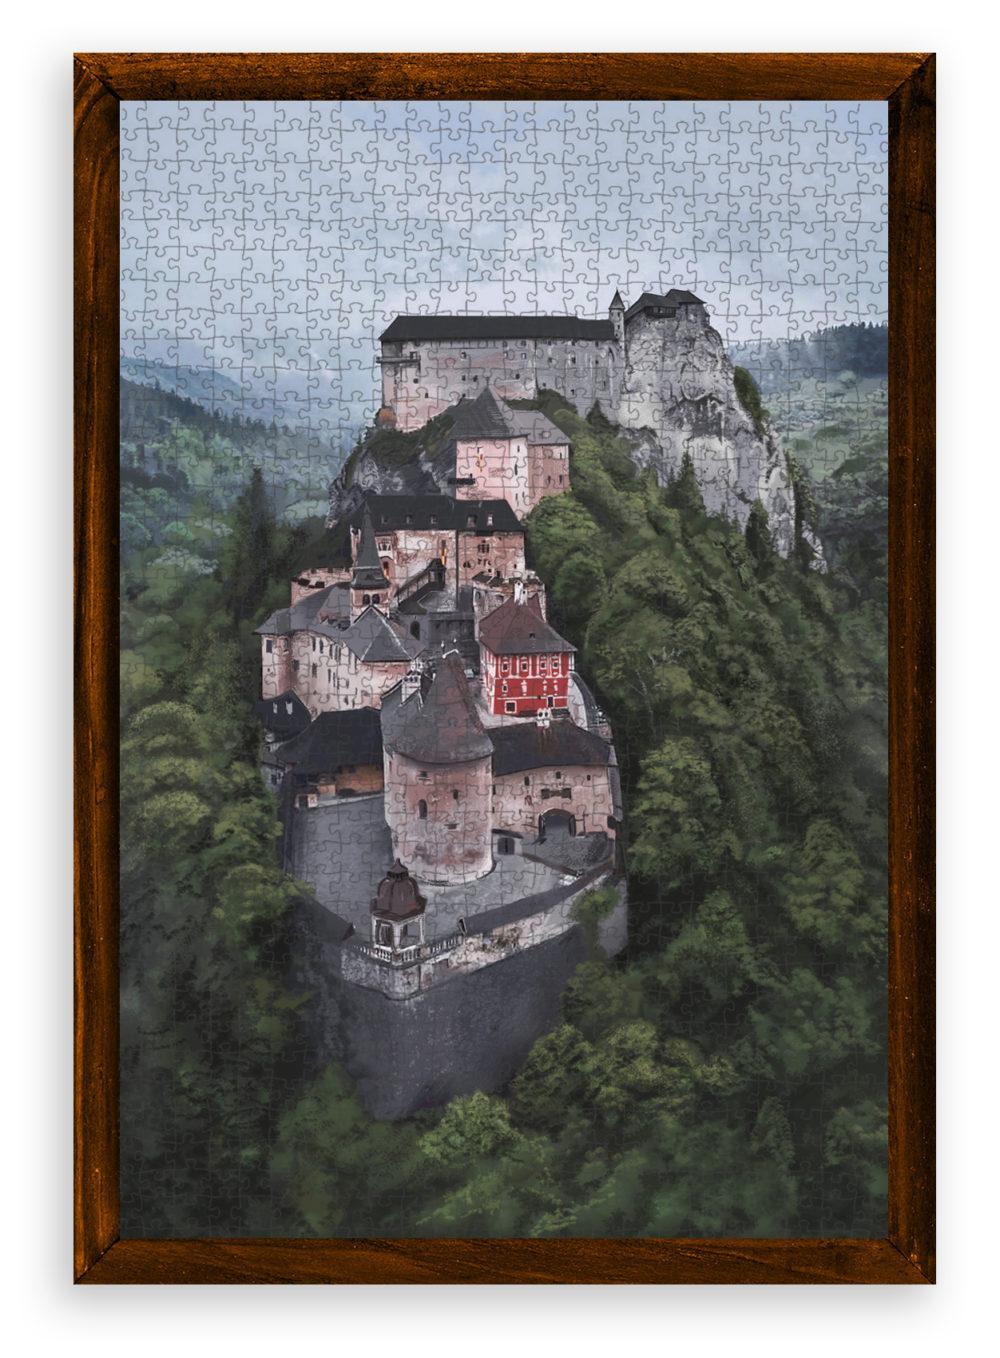 Puzzle Oravský hrad